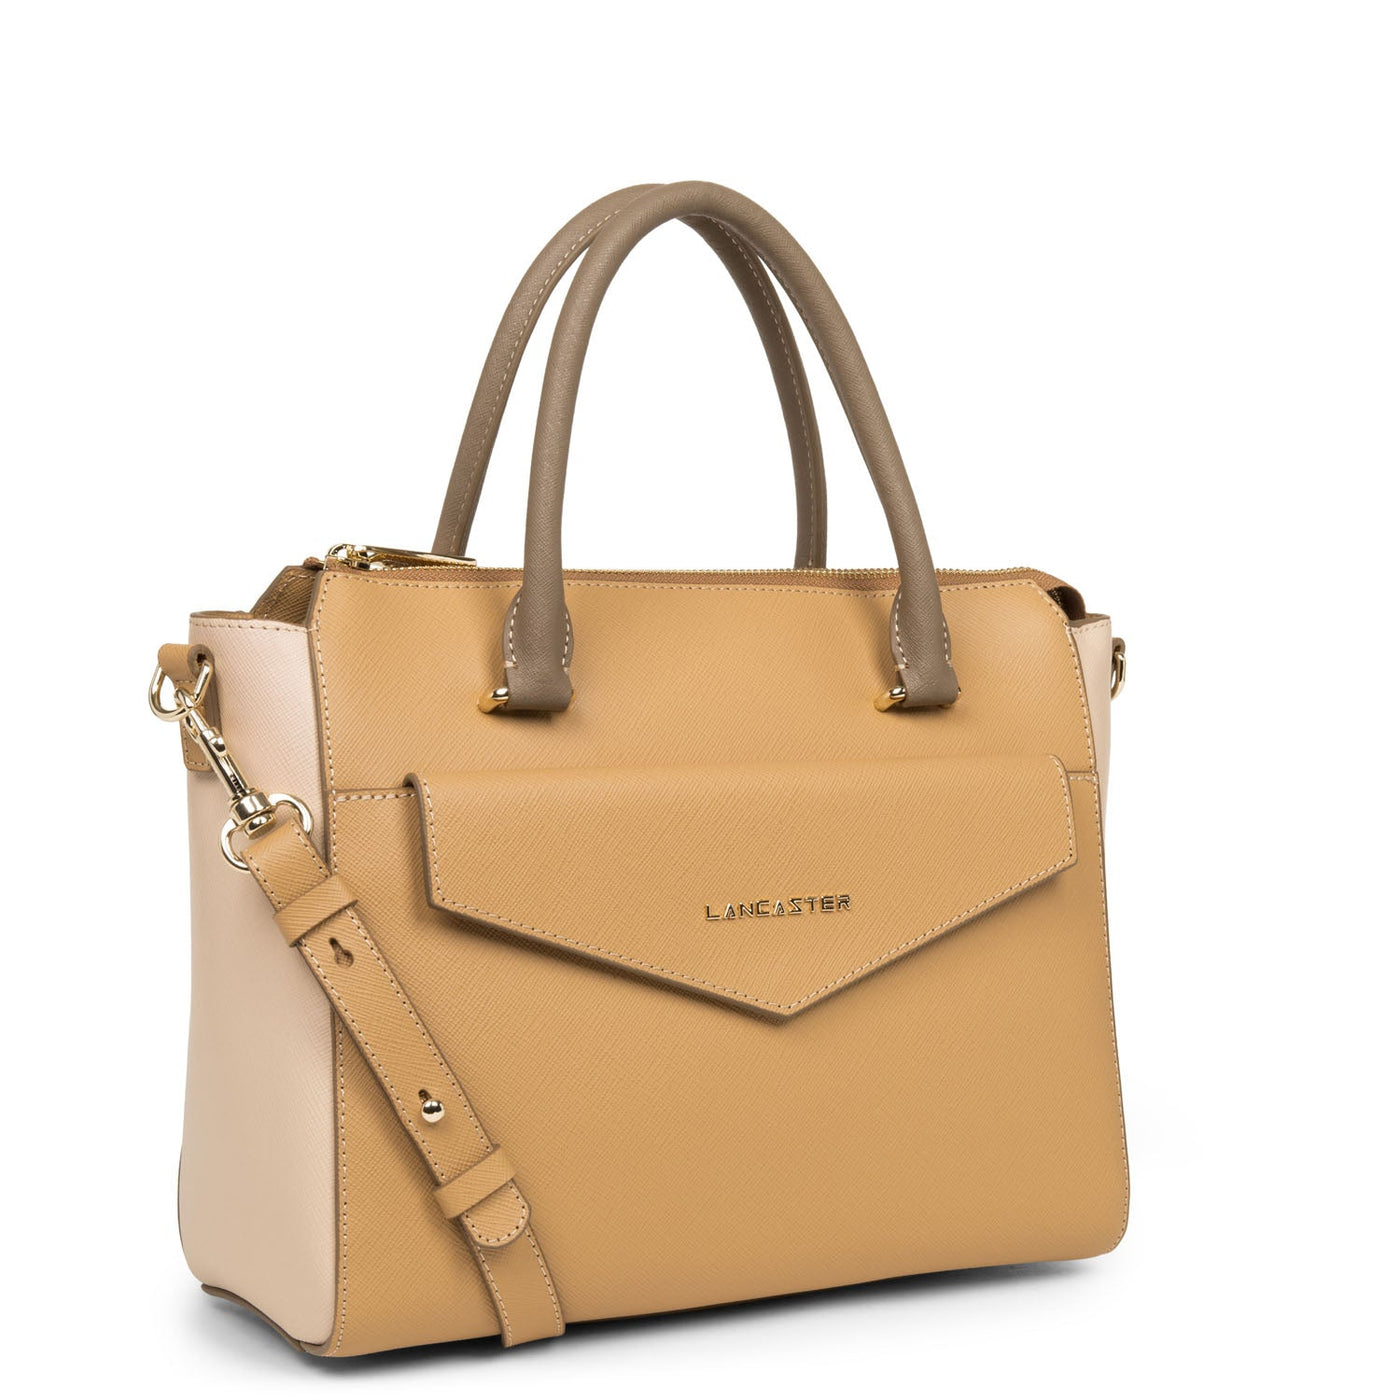 handbag - saffiano signature #couleur_naturel-poudre-vison